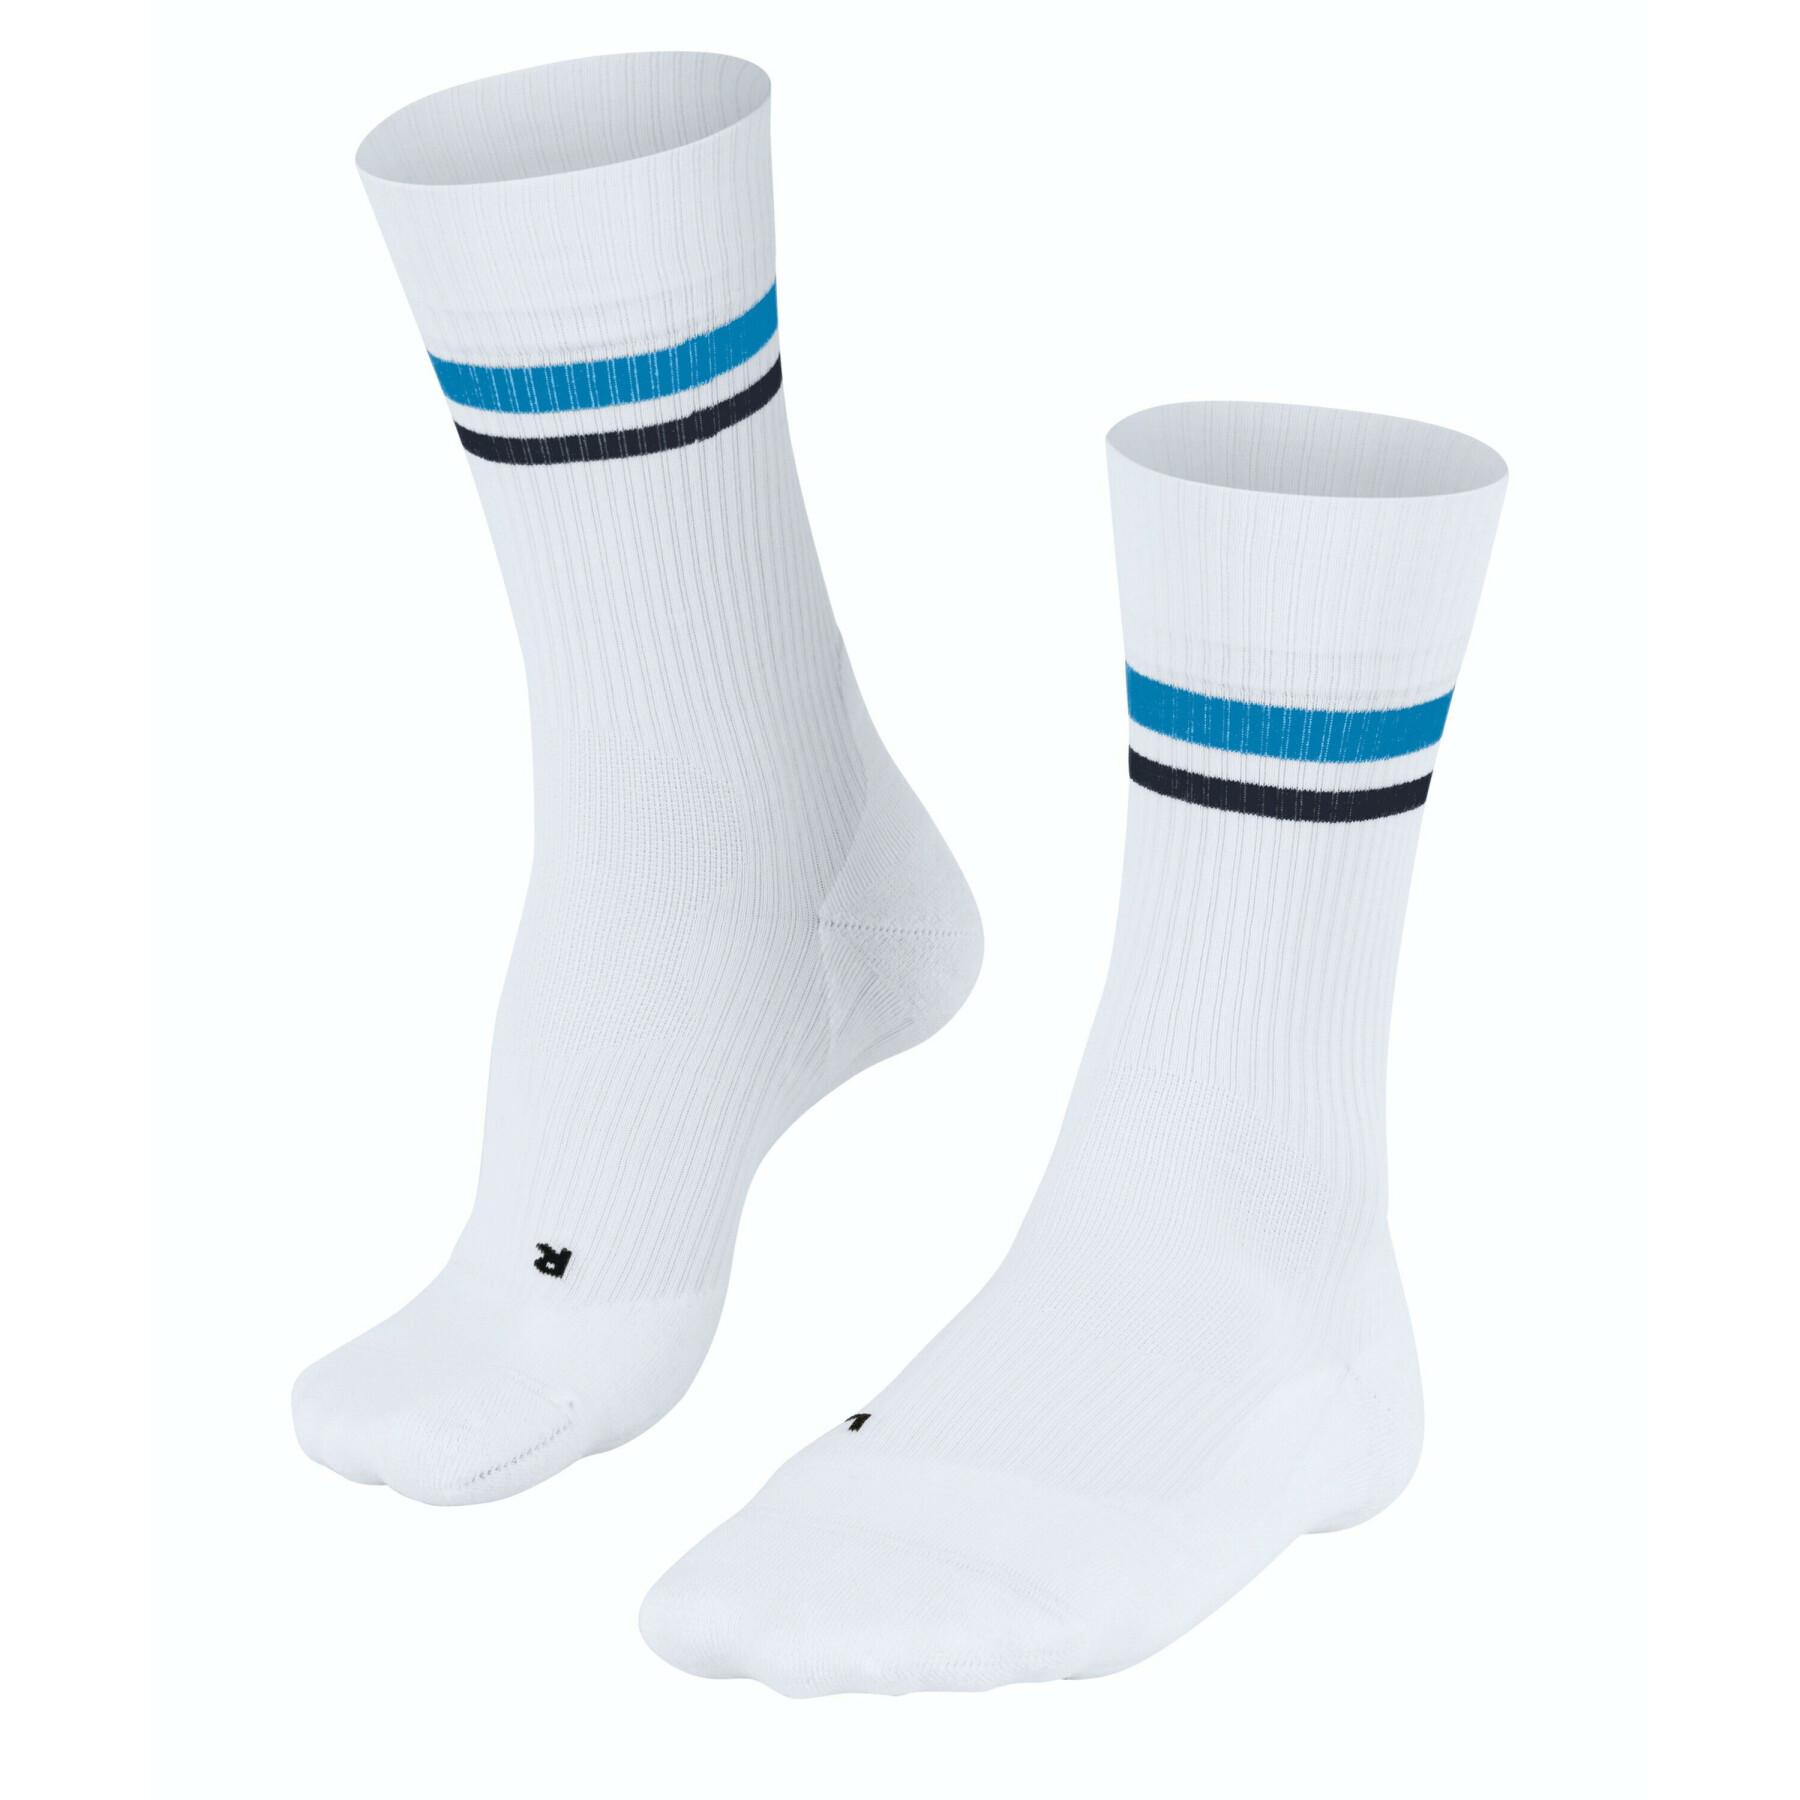 Women's socks Falke TE4 Classic